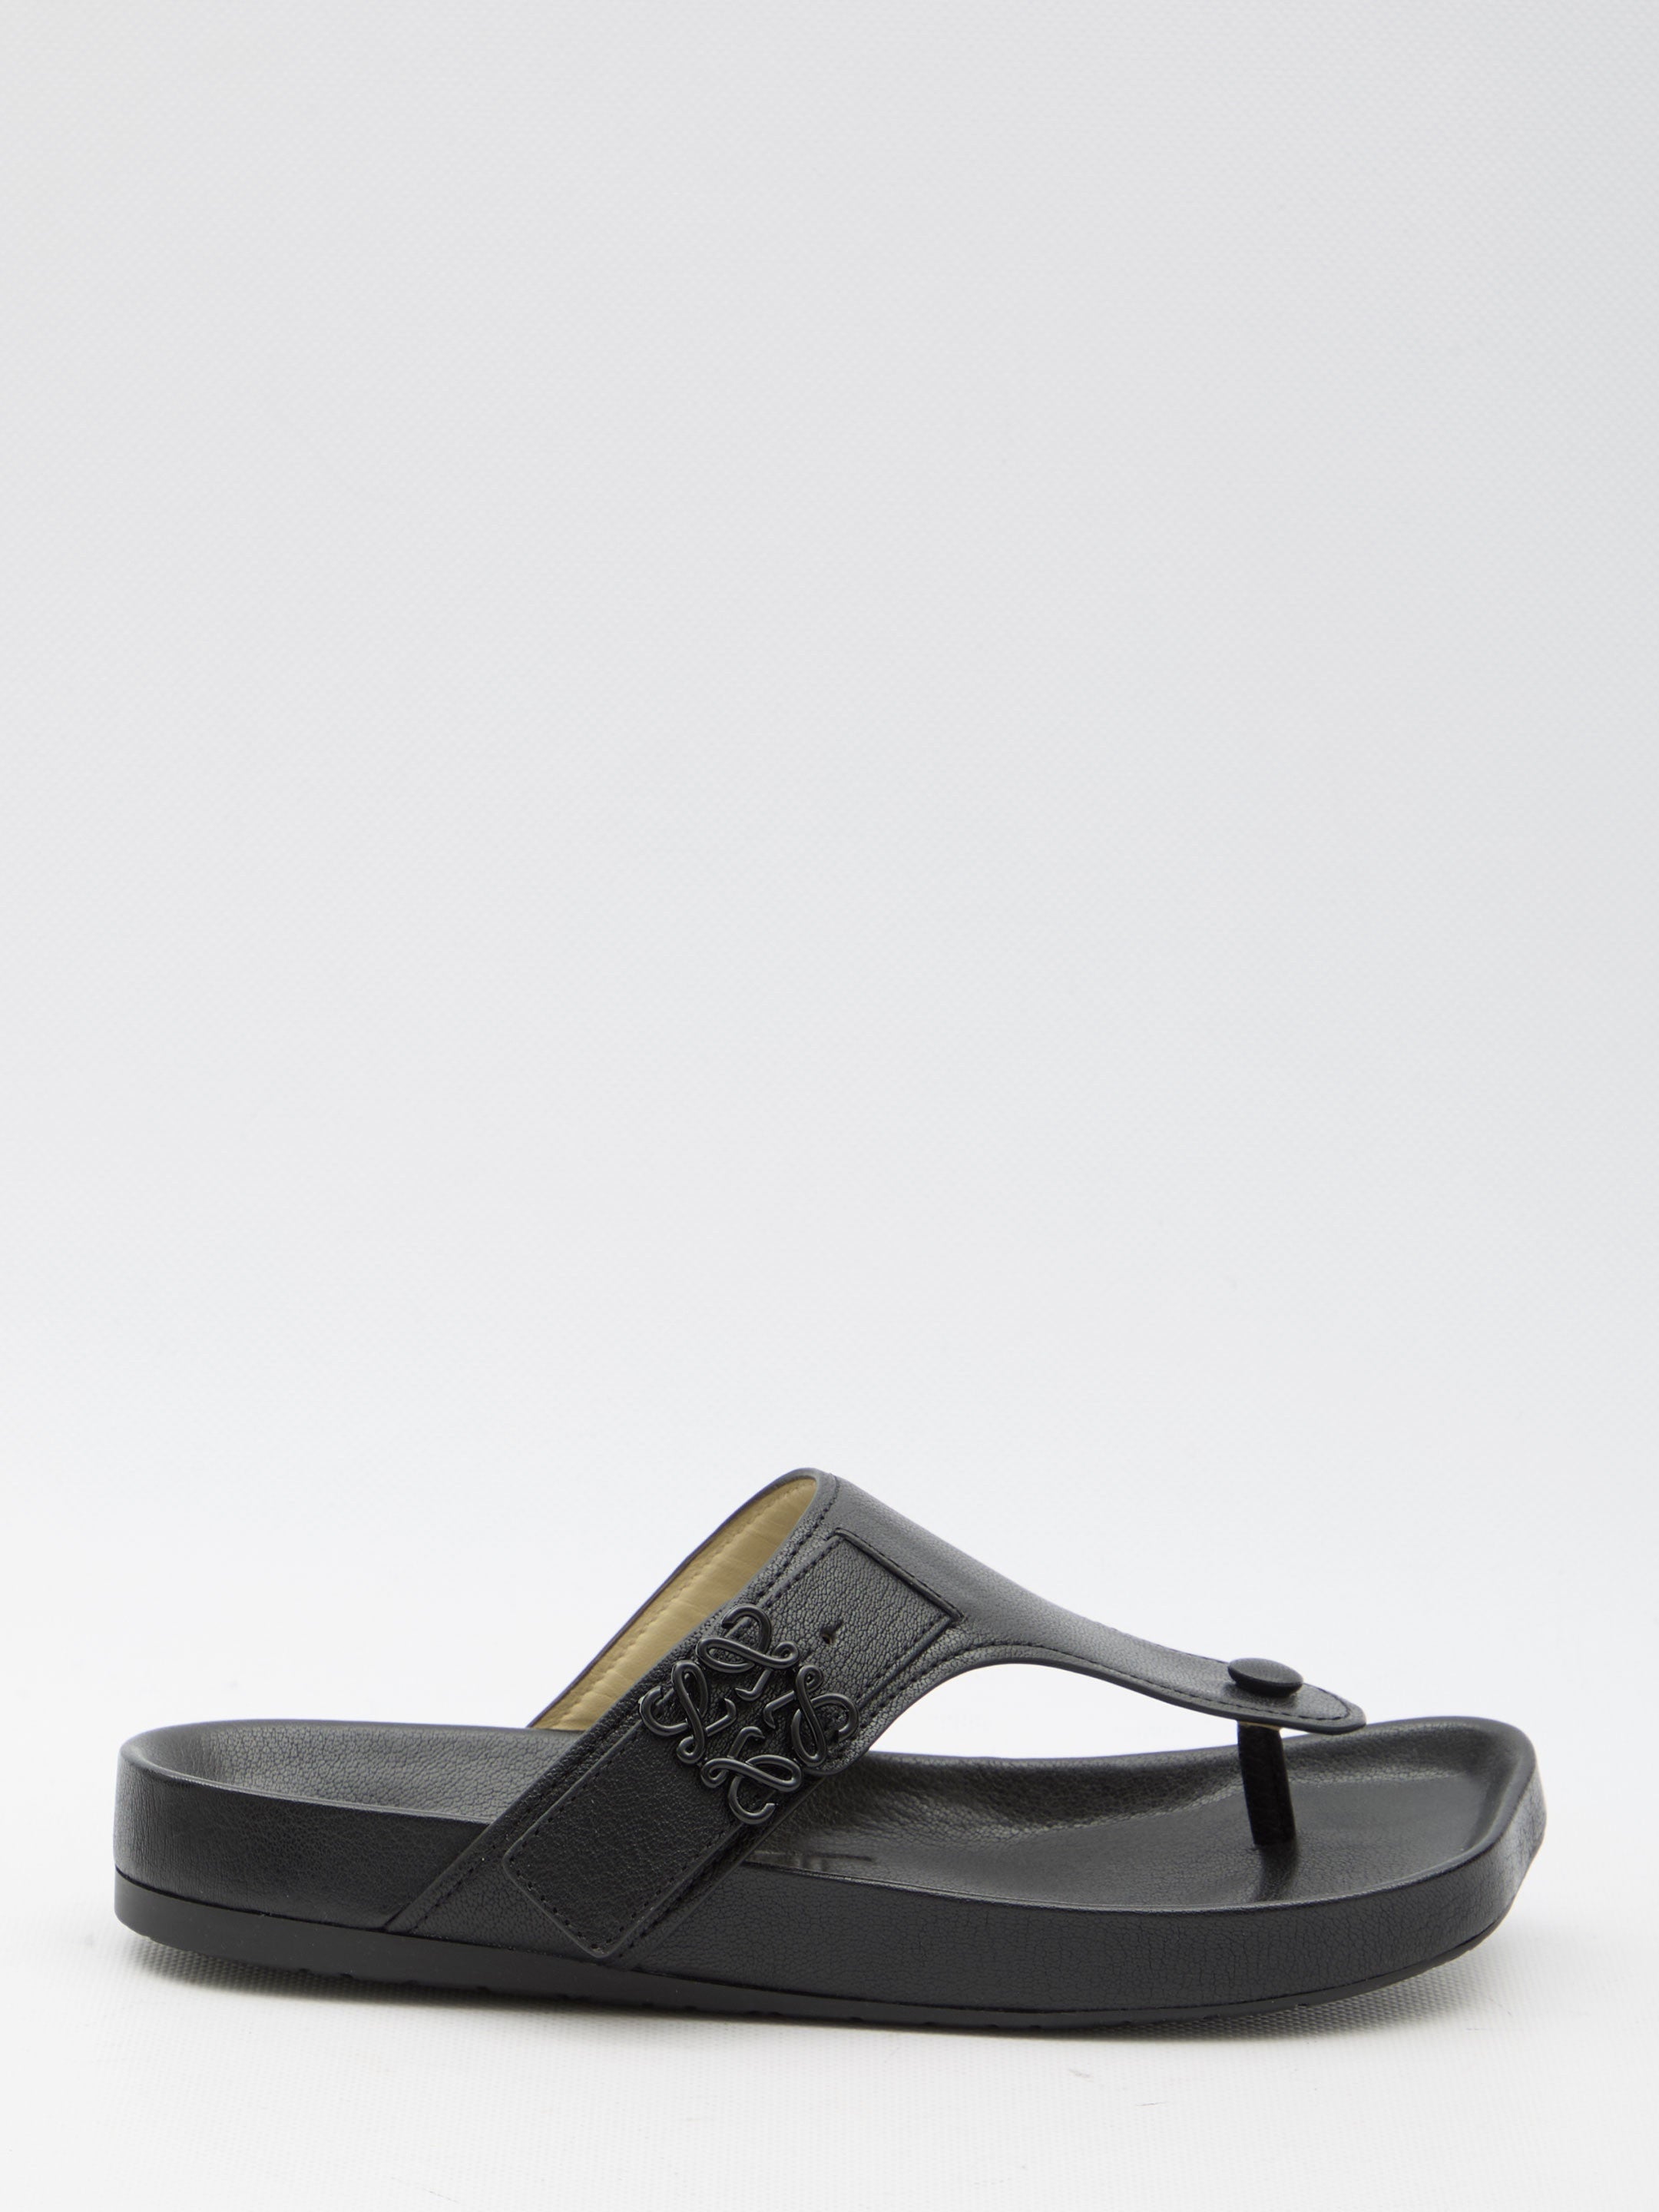 LOEWE-OUTLET-SALE-Ease-sandals-Sandalen-38-BLACK-ARCHIVE-COLLECTION.jpg